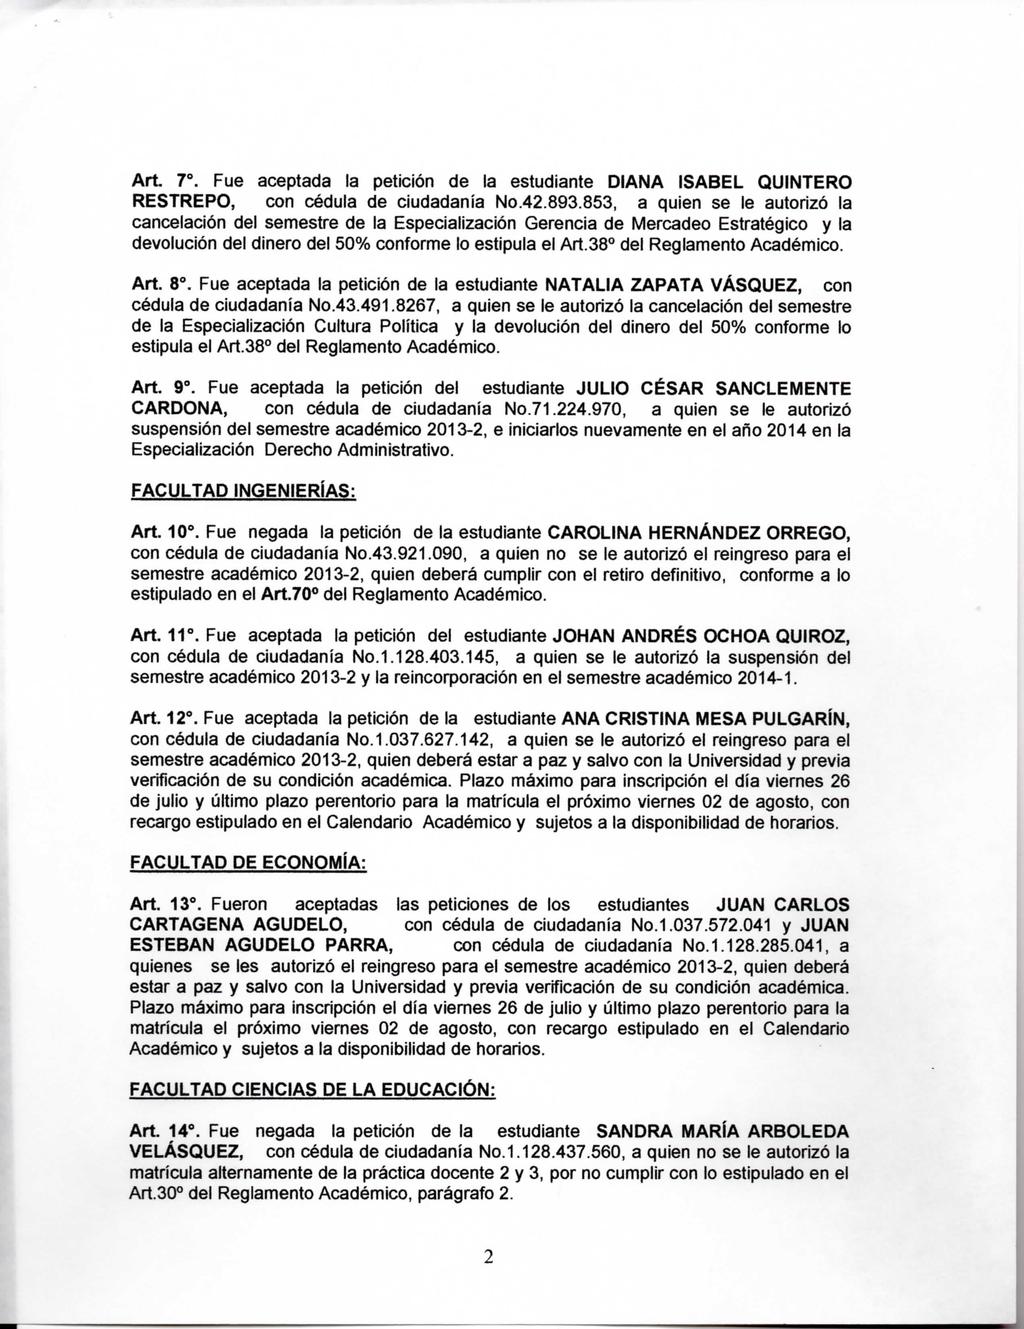 Art. 7. Fue aceptada la petición de la estudiante DIANA ISABEL QUINTERO RESTREPO, con cédula de ciudadanía No.42.893.